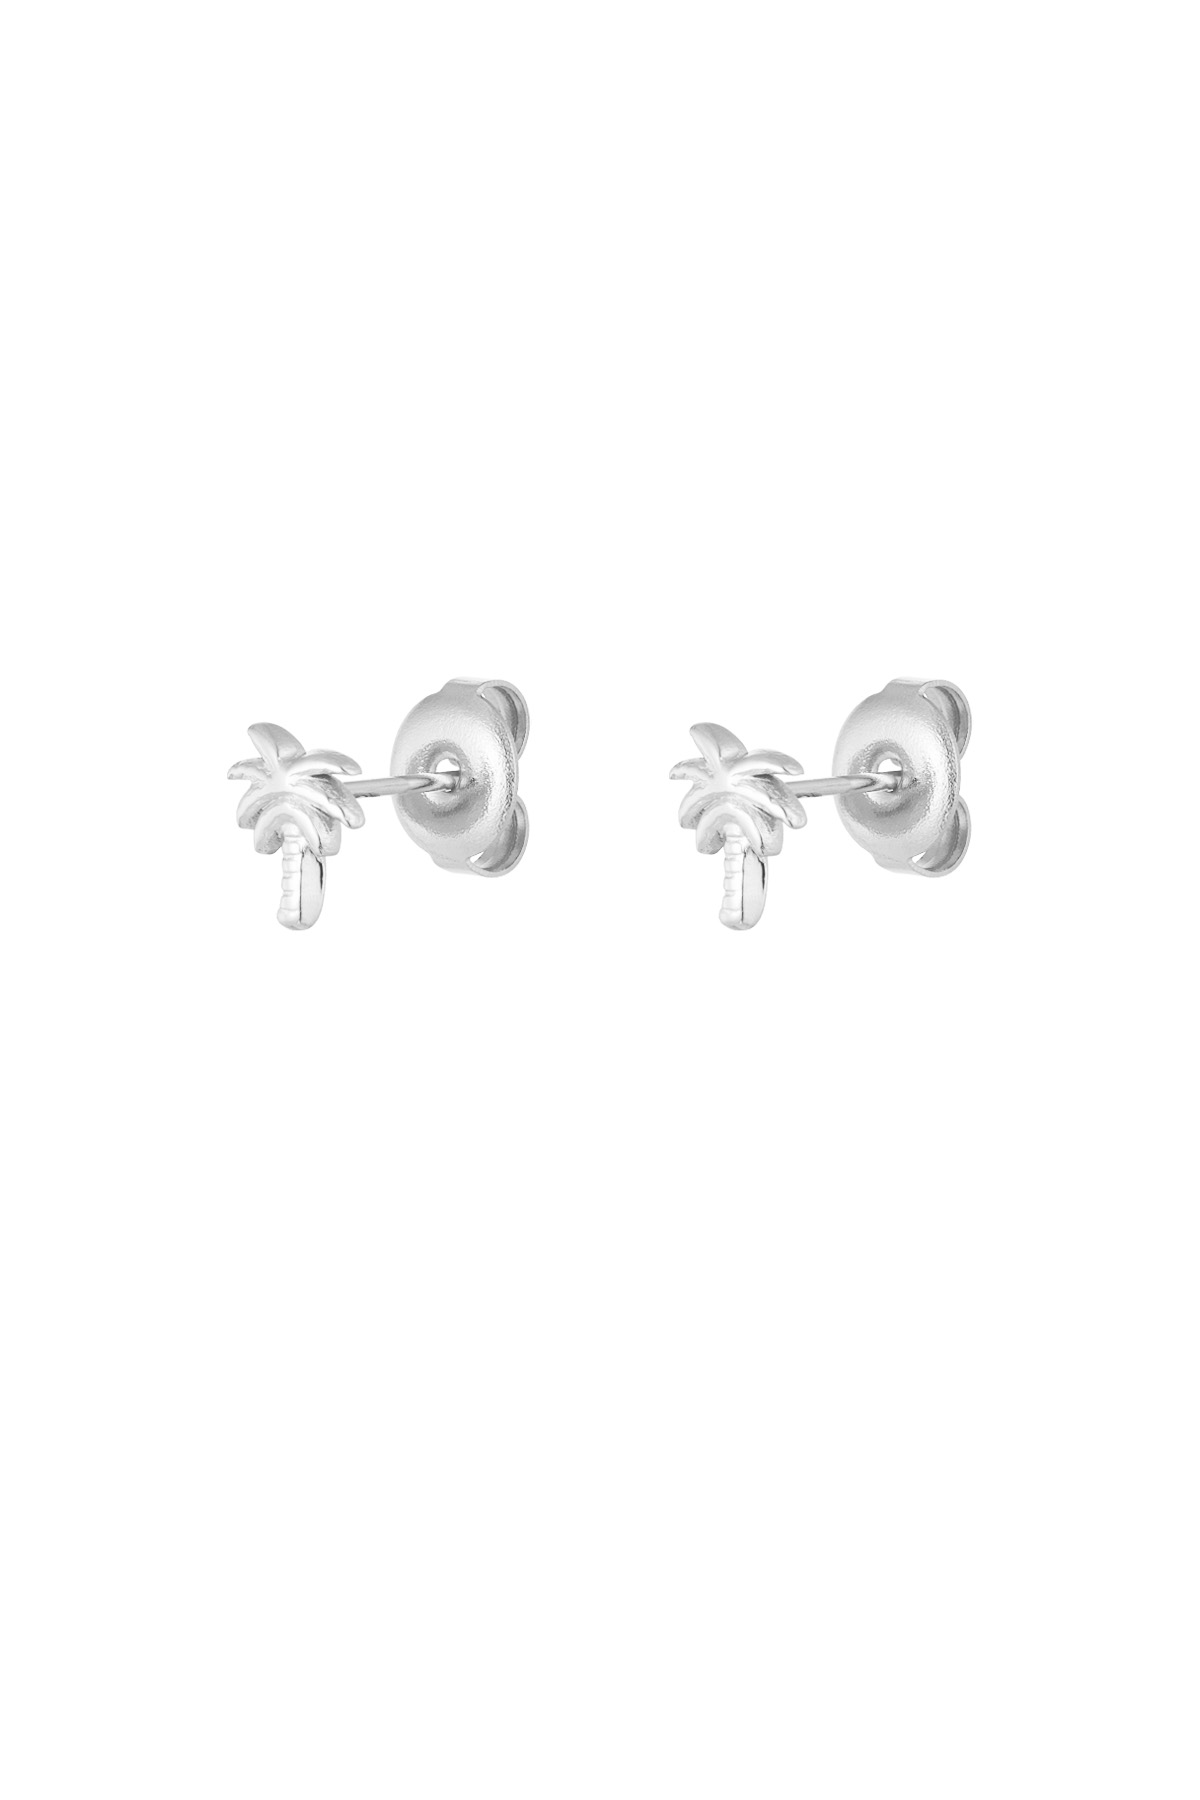 Palm tree stud earrings - silver h5 